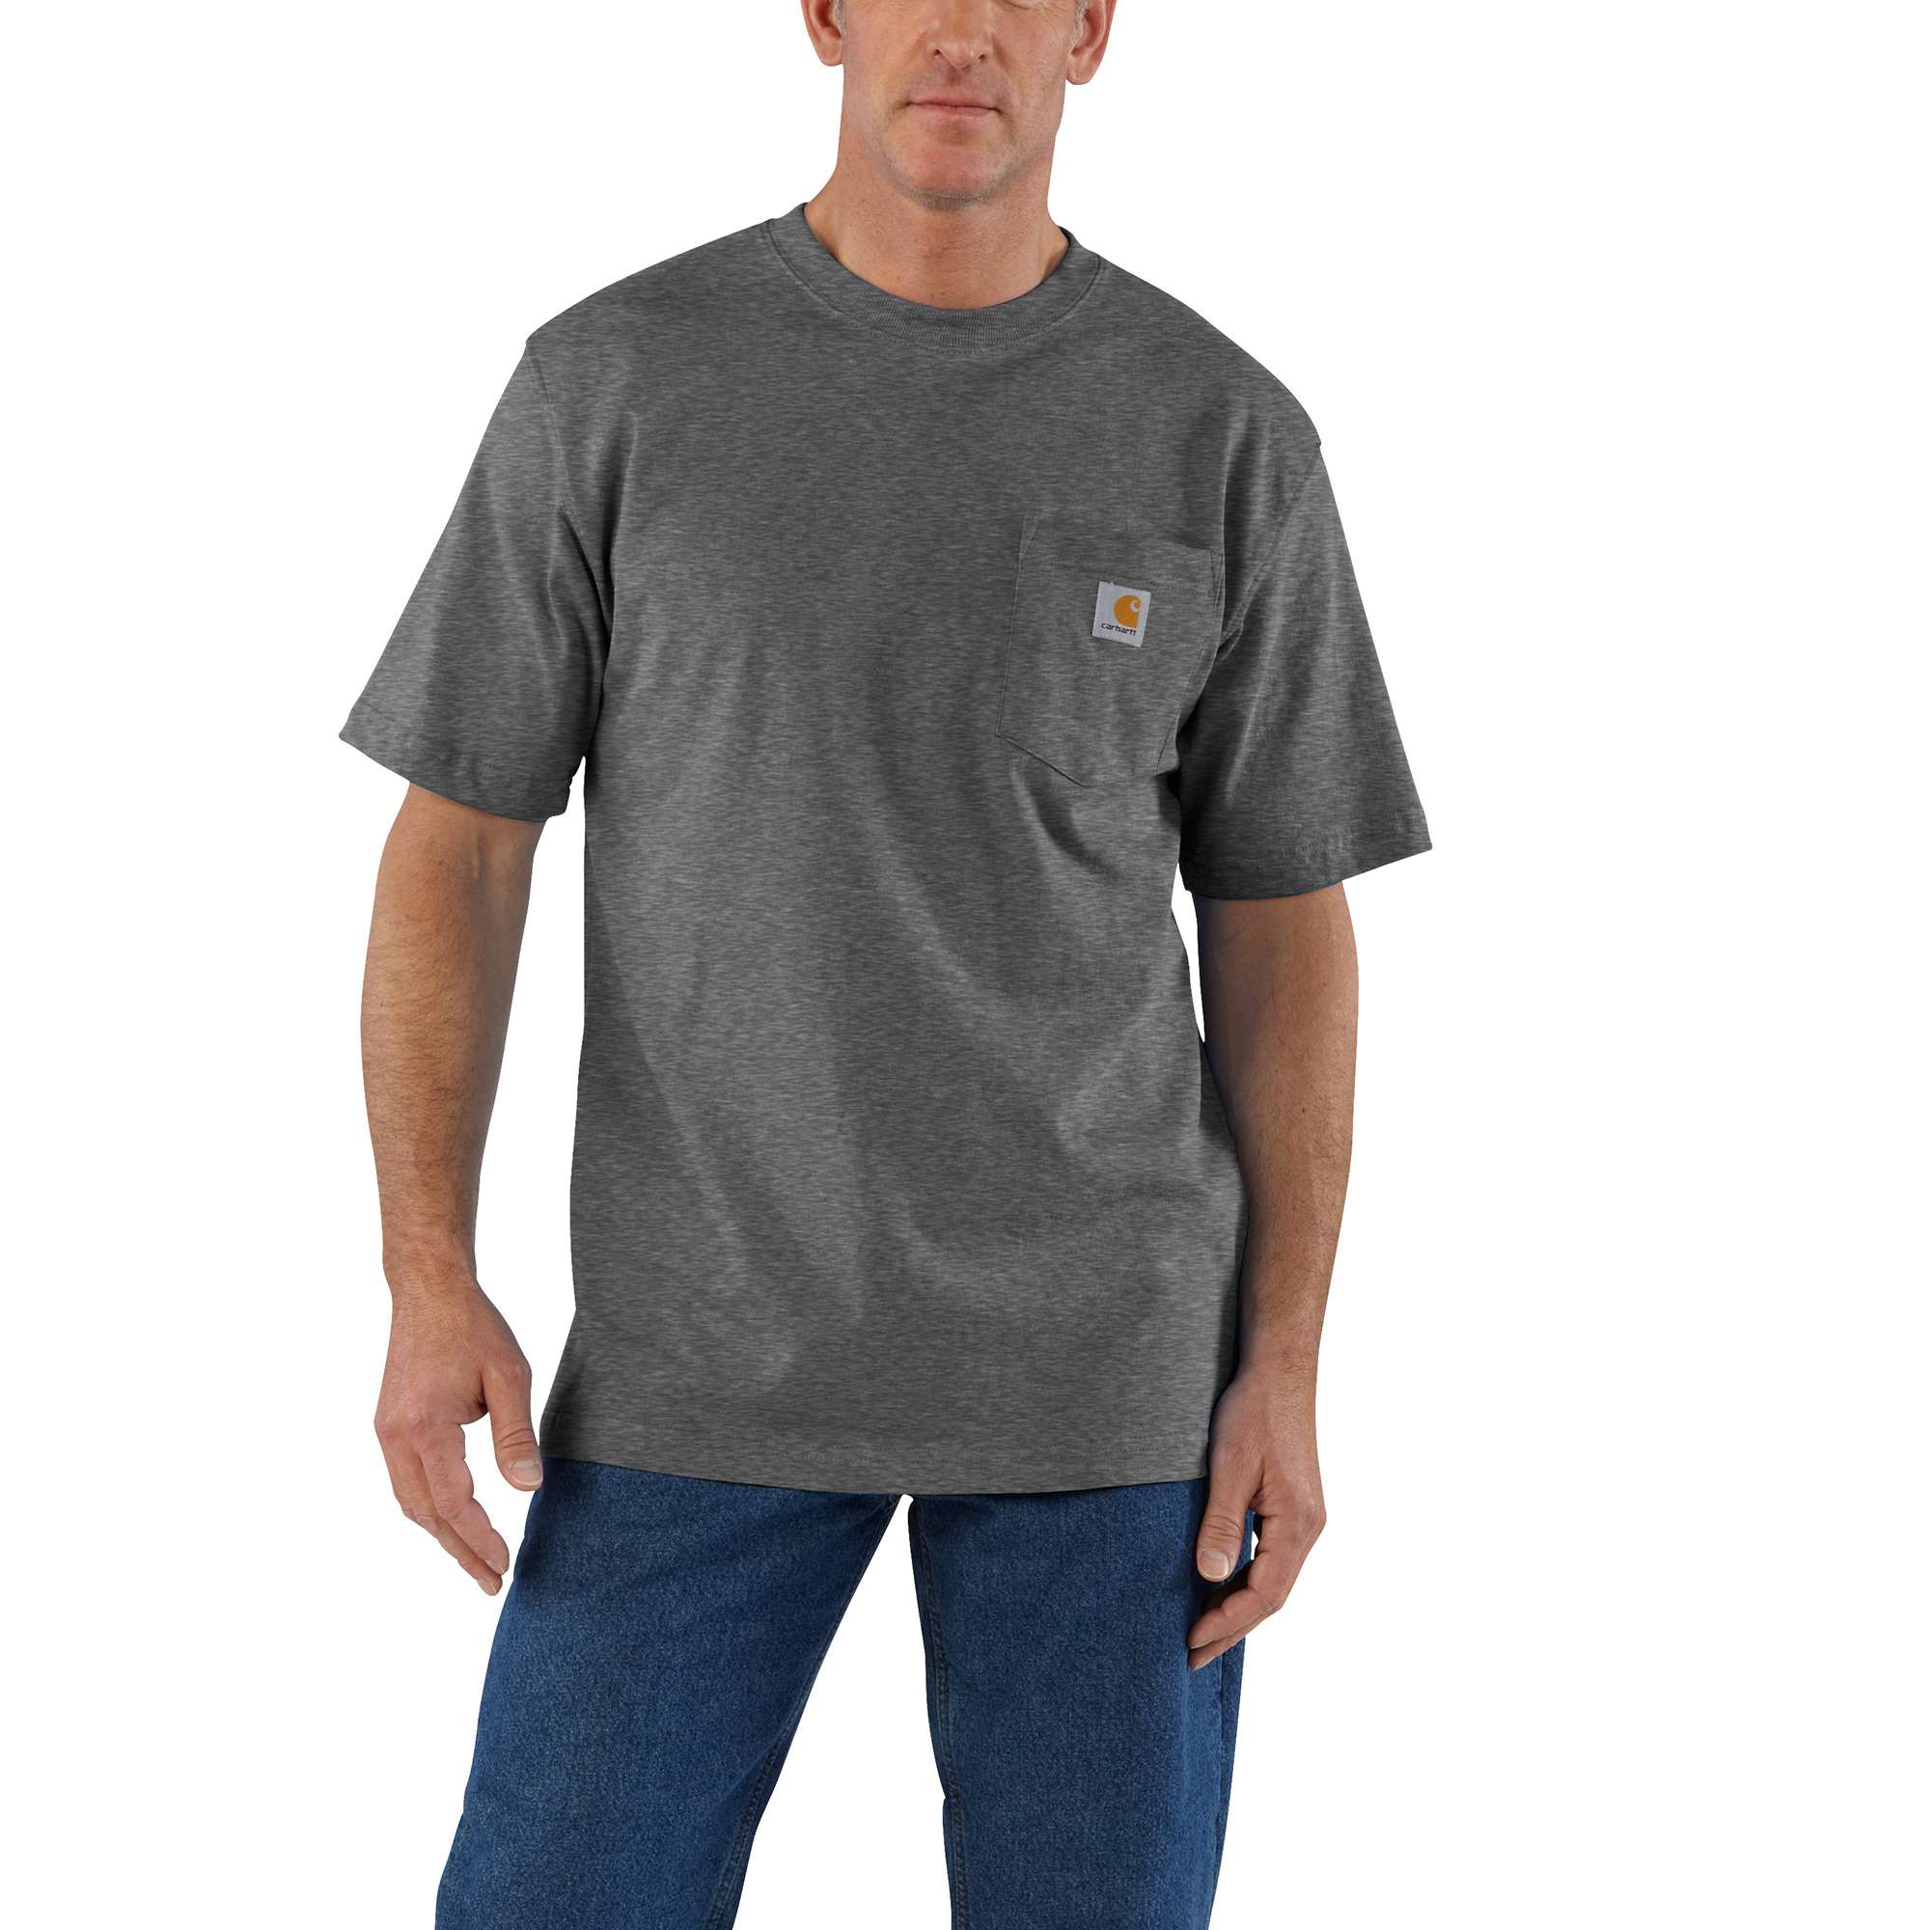 Carhartt Men's Knit Short Sleeve Solid T-shirt (Medium) in the